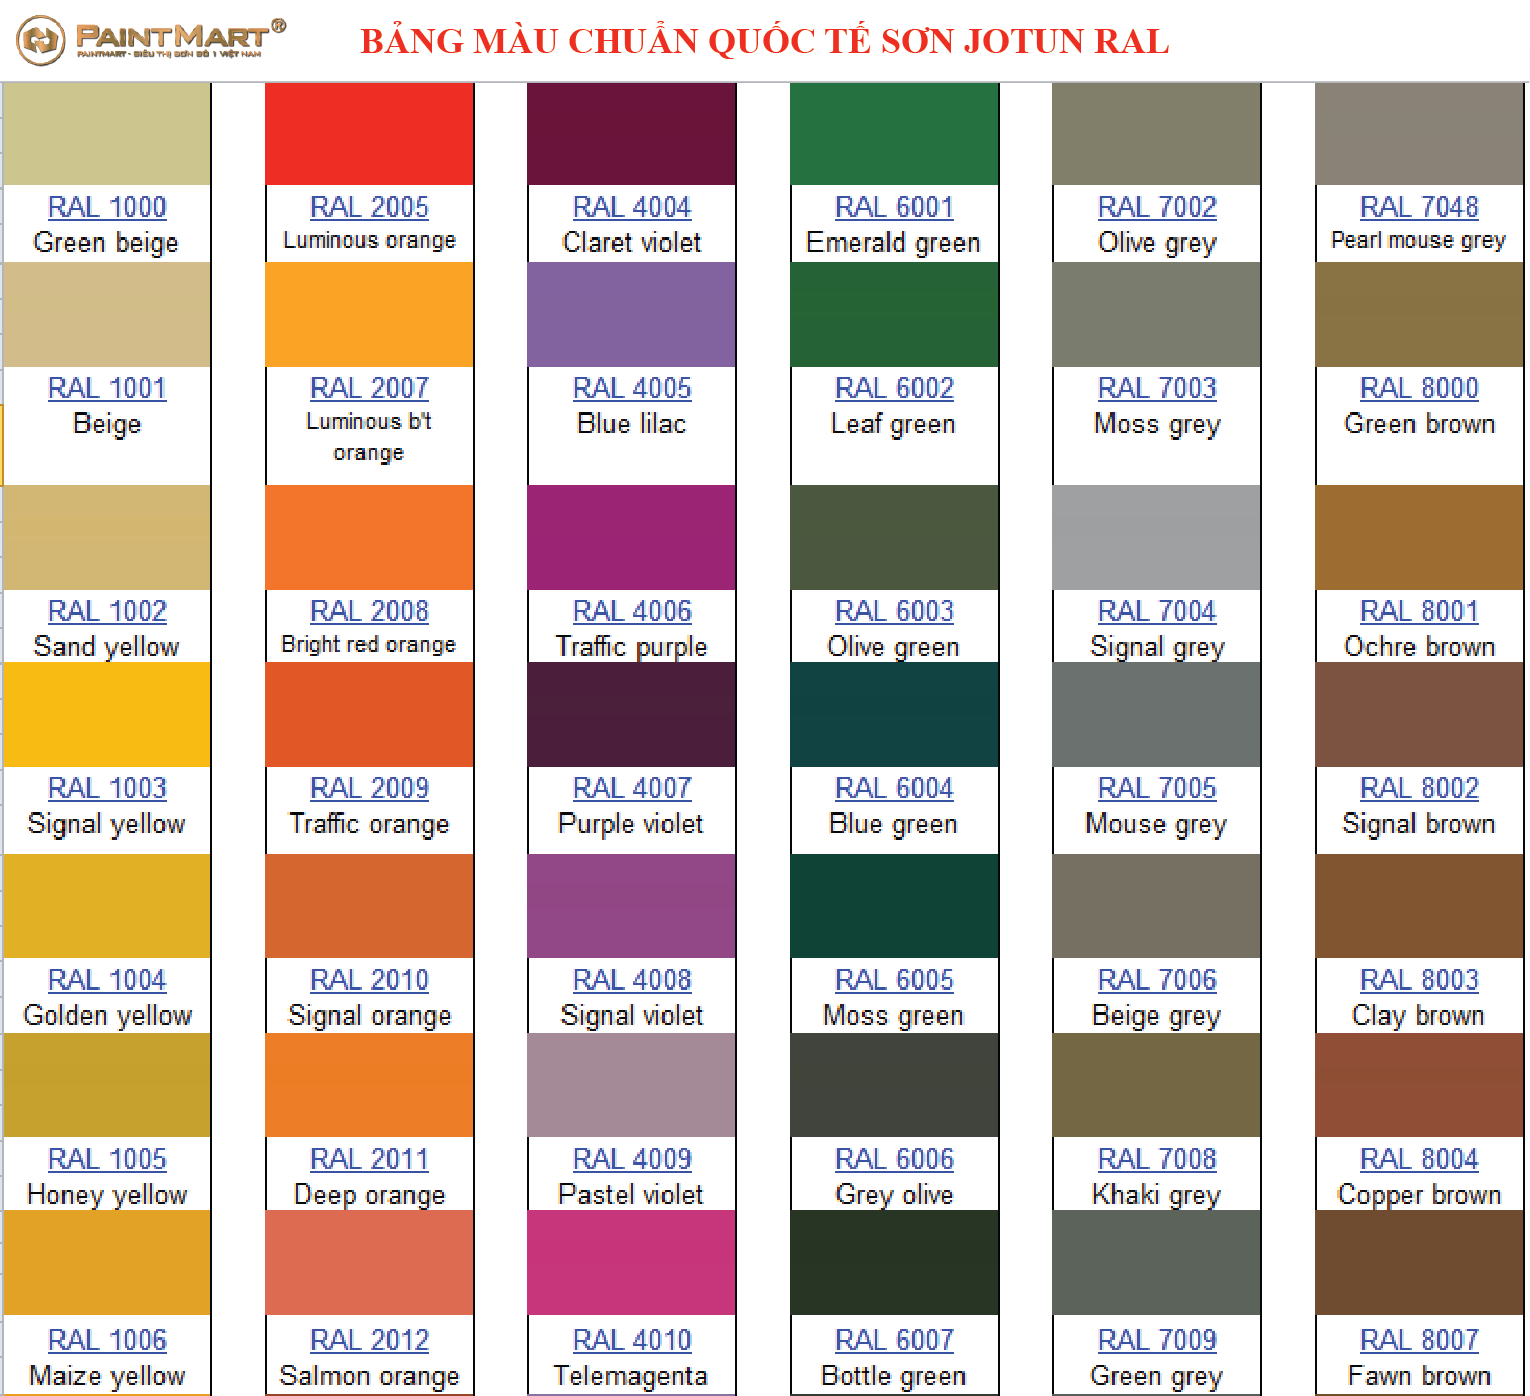 Bảng màu quốc tế sơn Jotun RAL cũng cung cấp danh sách các màu sắc tuyệt đẹp để bạn lựa chọn. Hãy xem ảnh để nhìn thấy sự kiêu hãnh của các màu sơn Jotun RAL.